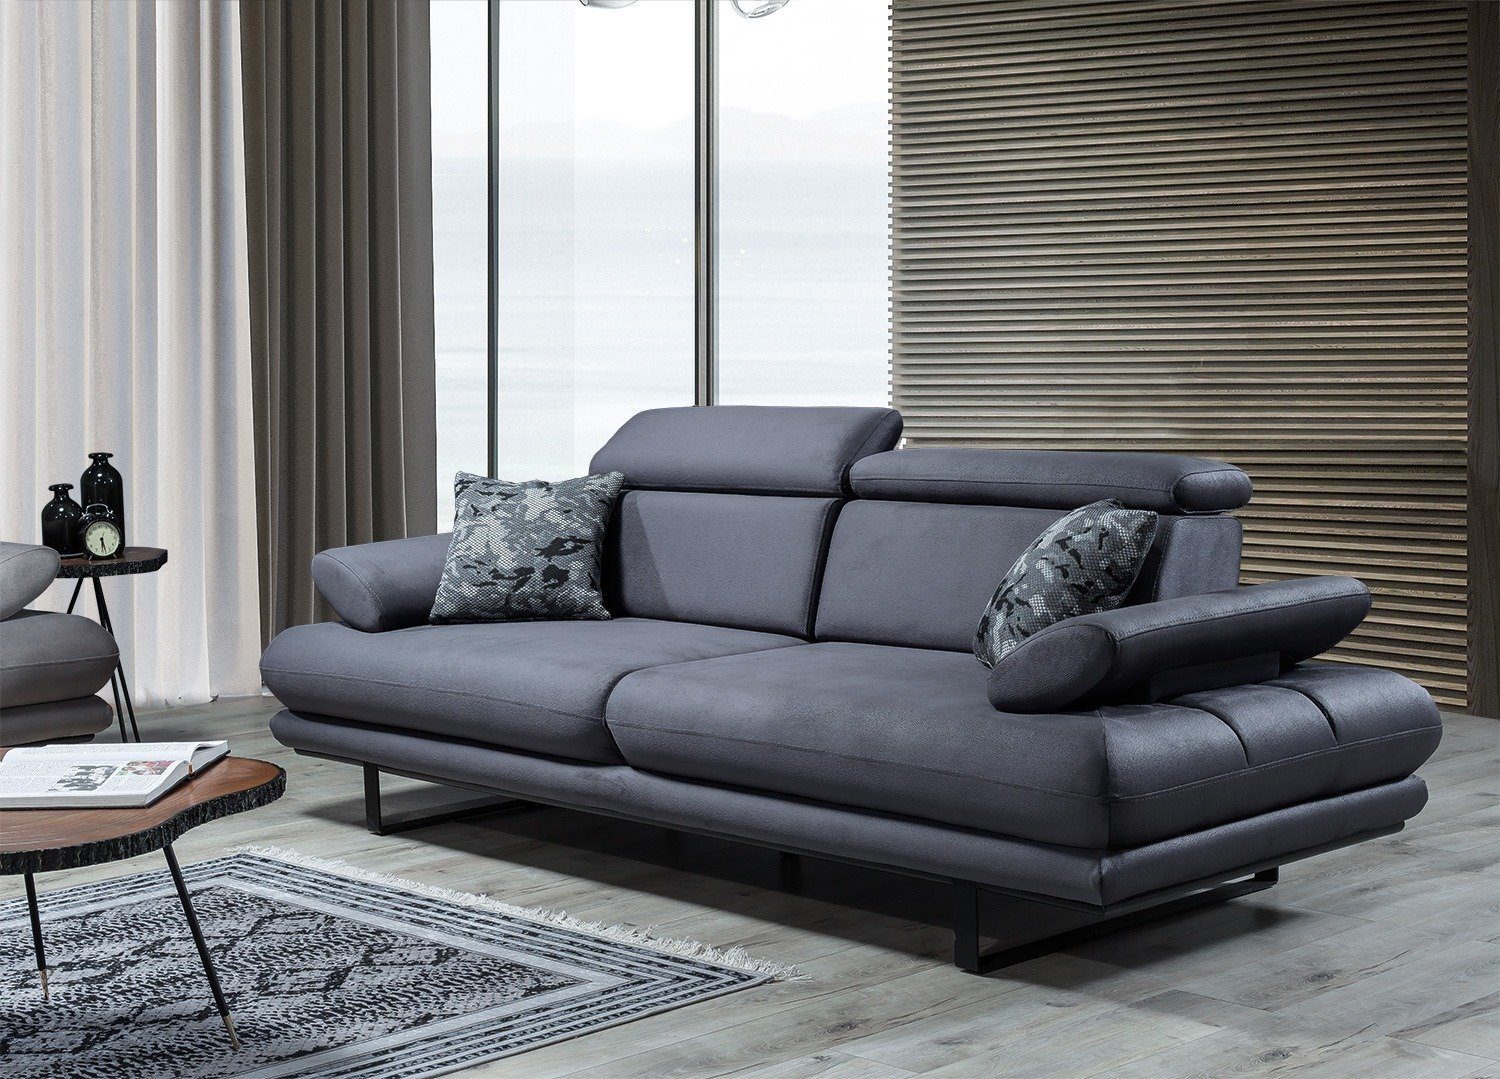 Villa Möbel Sofa Energy, 1 Stk. 2-Sitzer, Quality Made in Turkey, stylische Sitztiefen- und Armlehnenverstellung Anthrazit